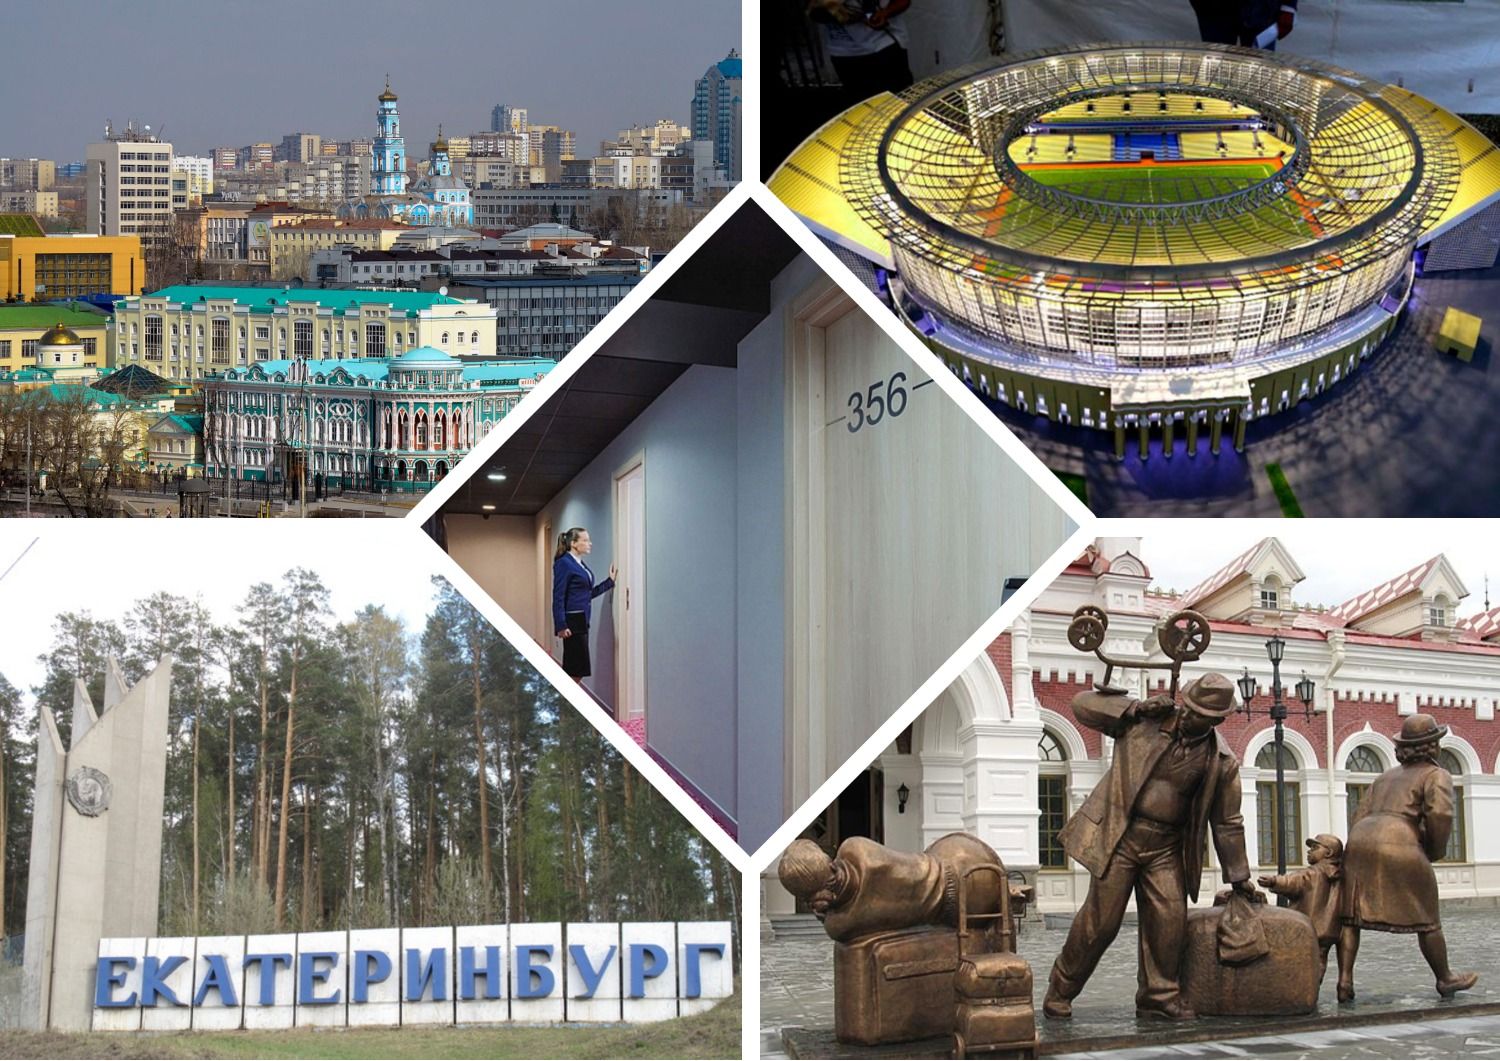 De bedste billige hoteller, hoteller, vandrehjem i Jekaterinburg i 2022